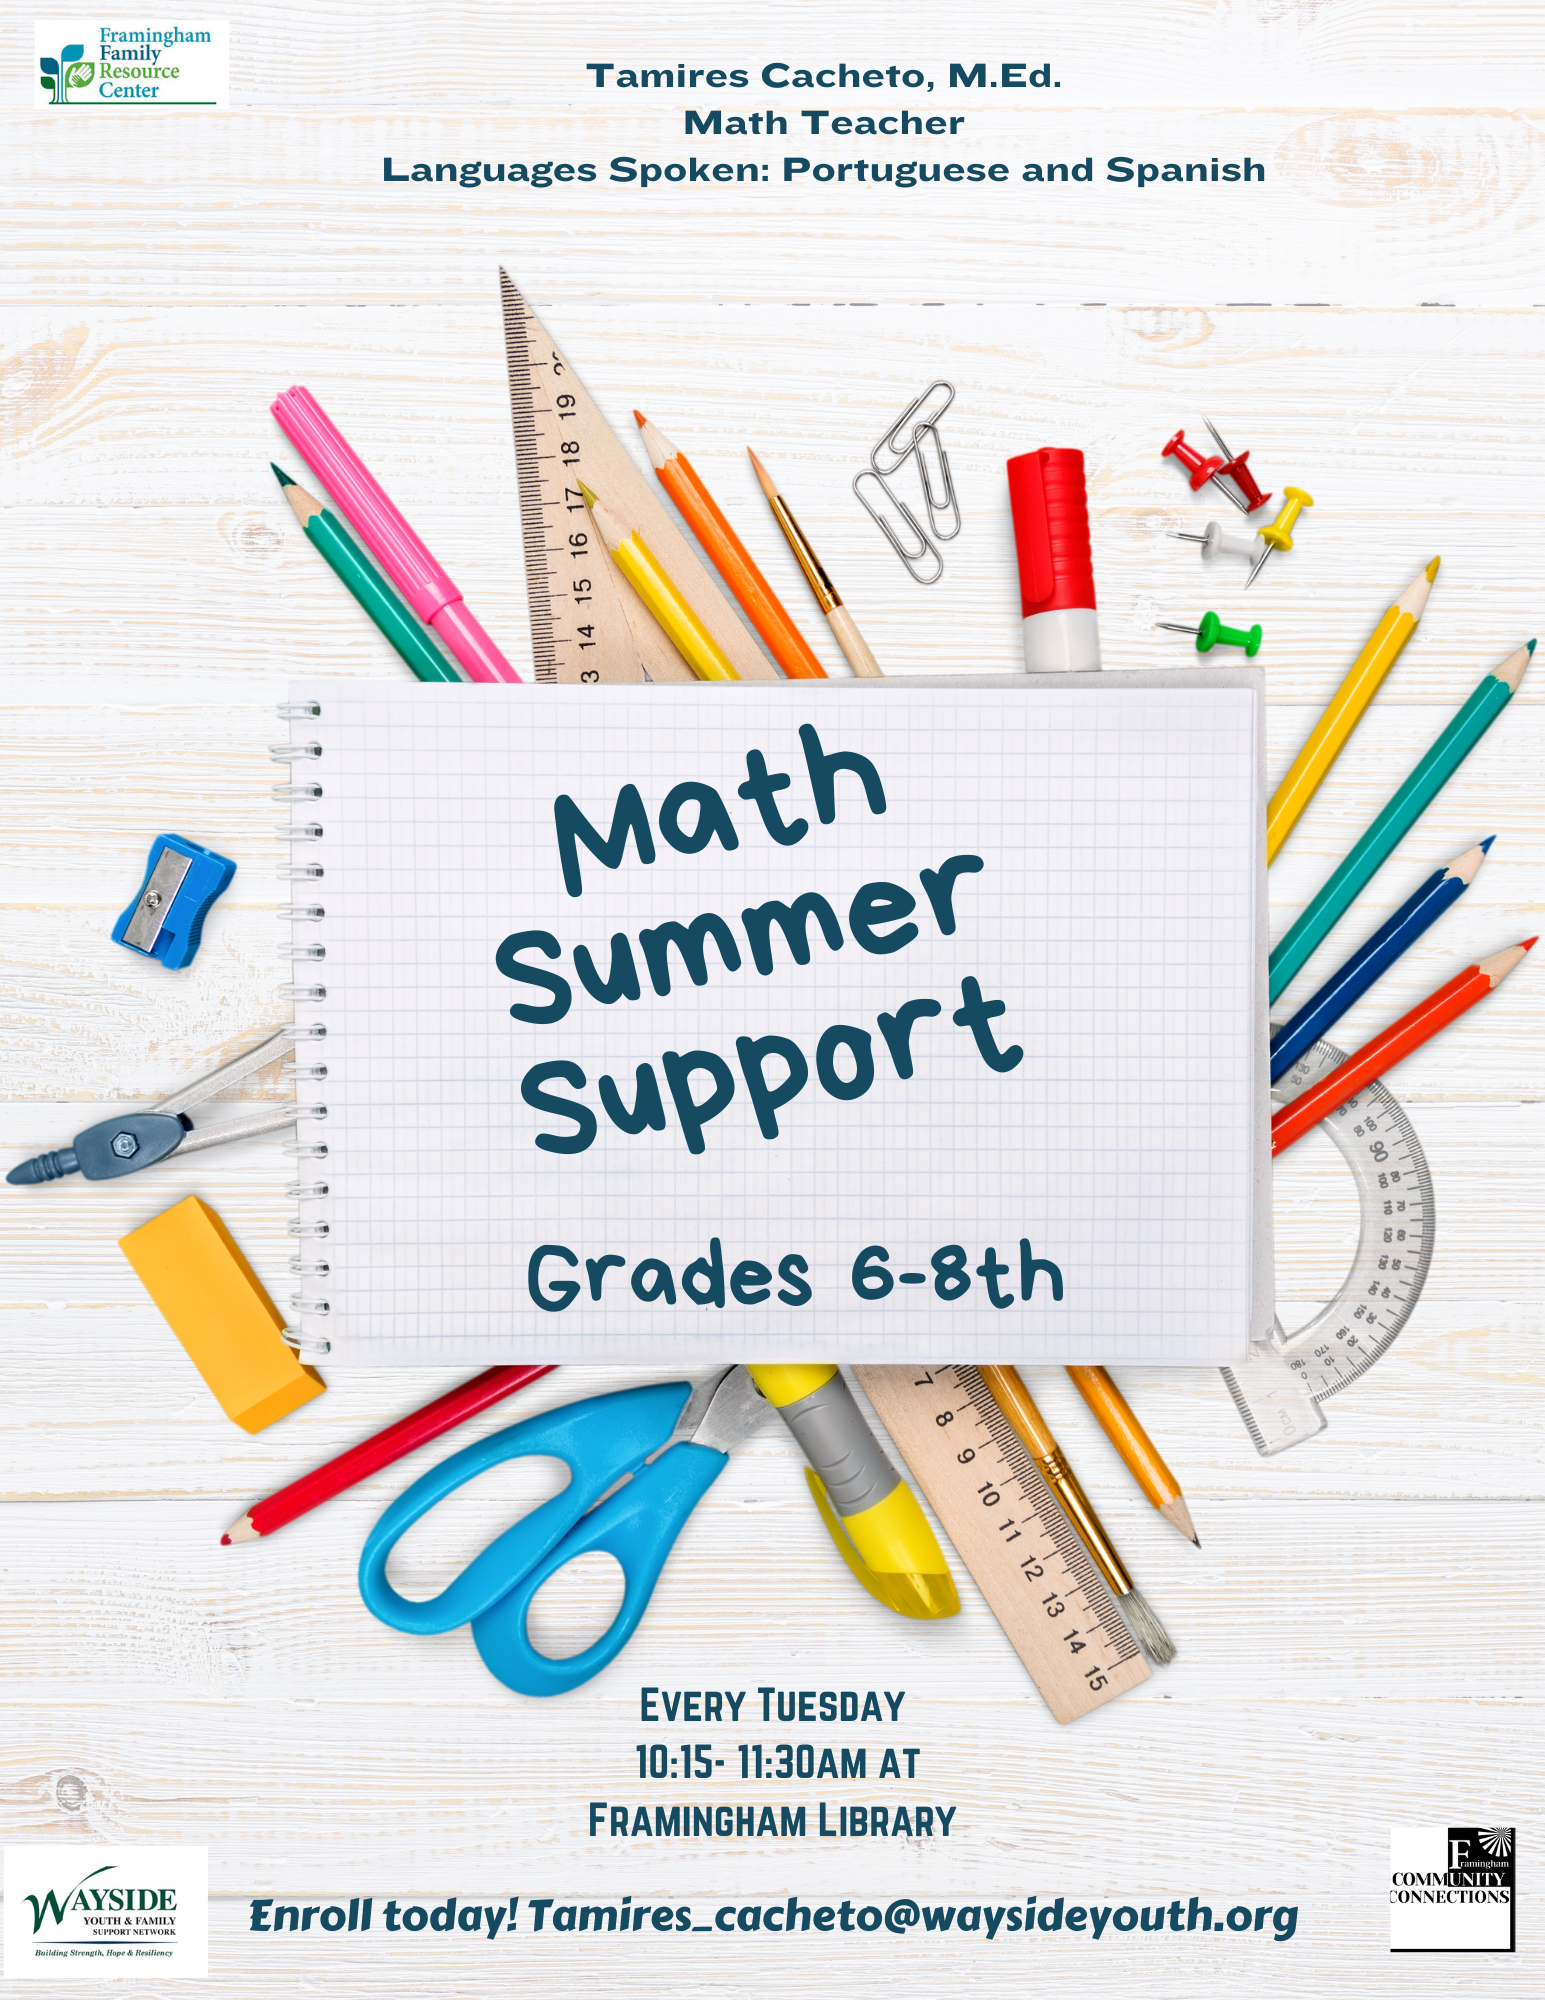 Math Summer Support Grades 6-8th